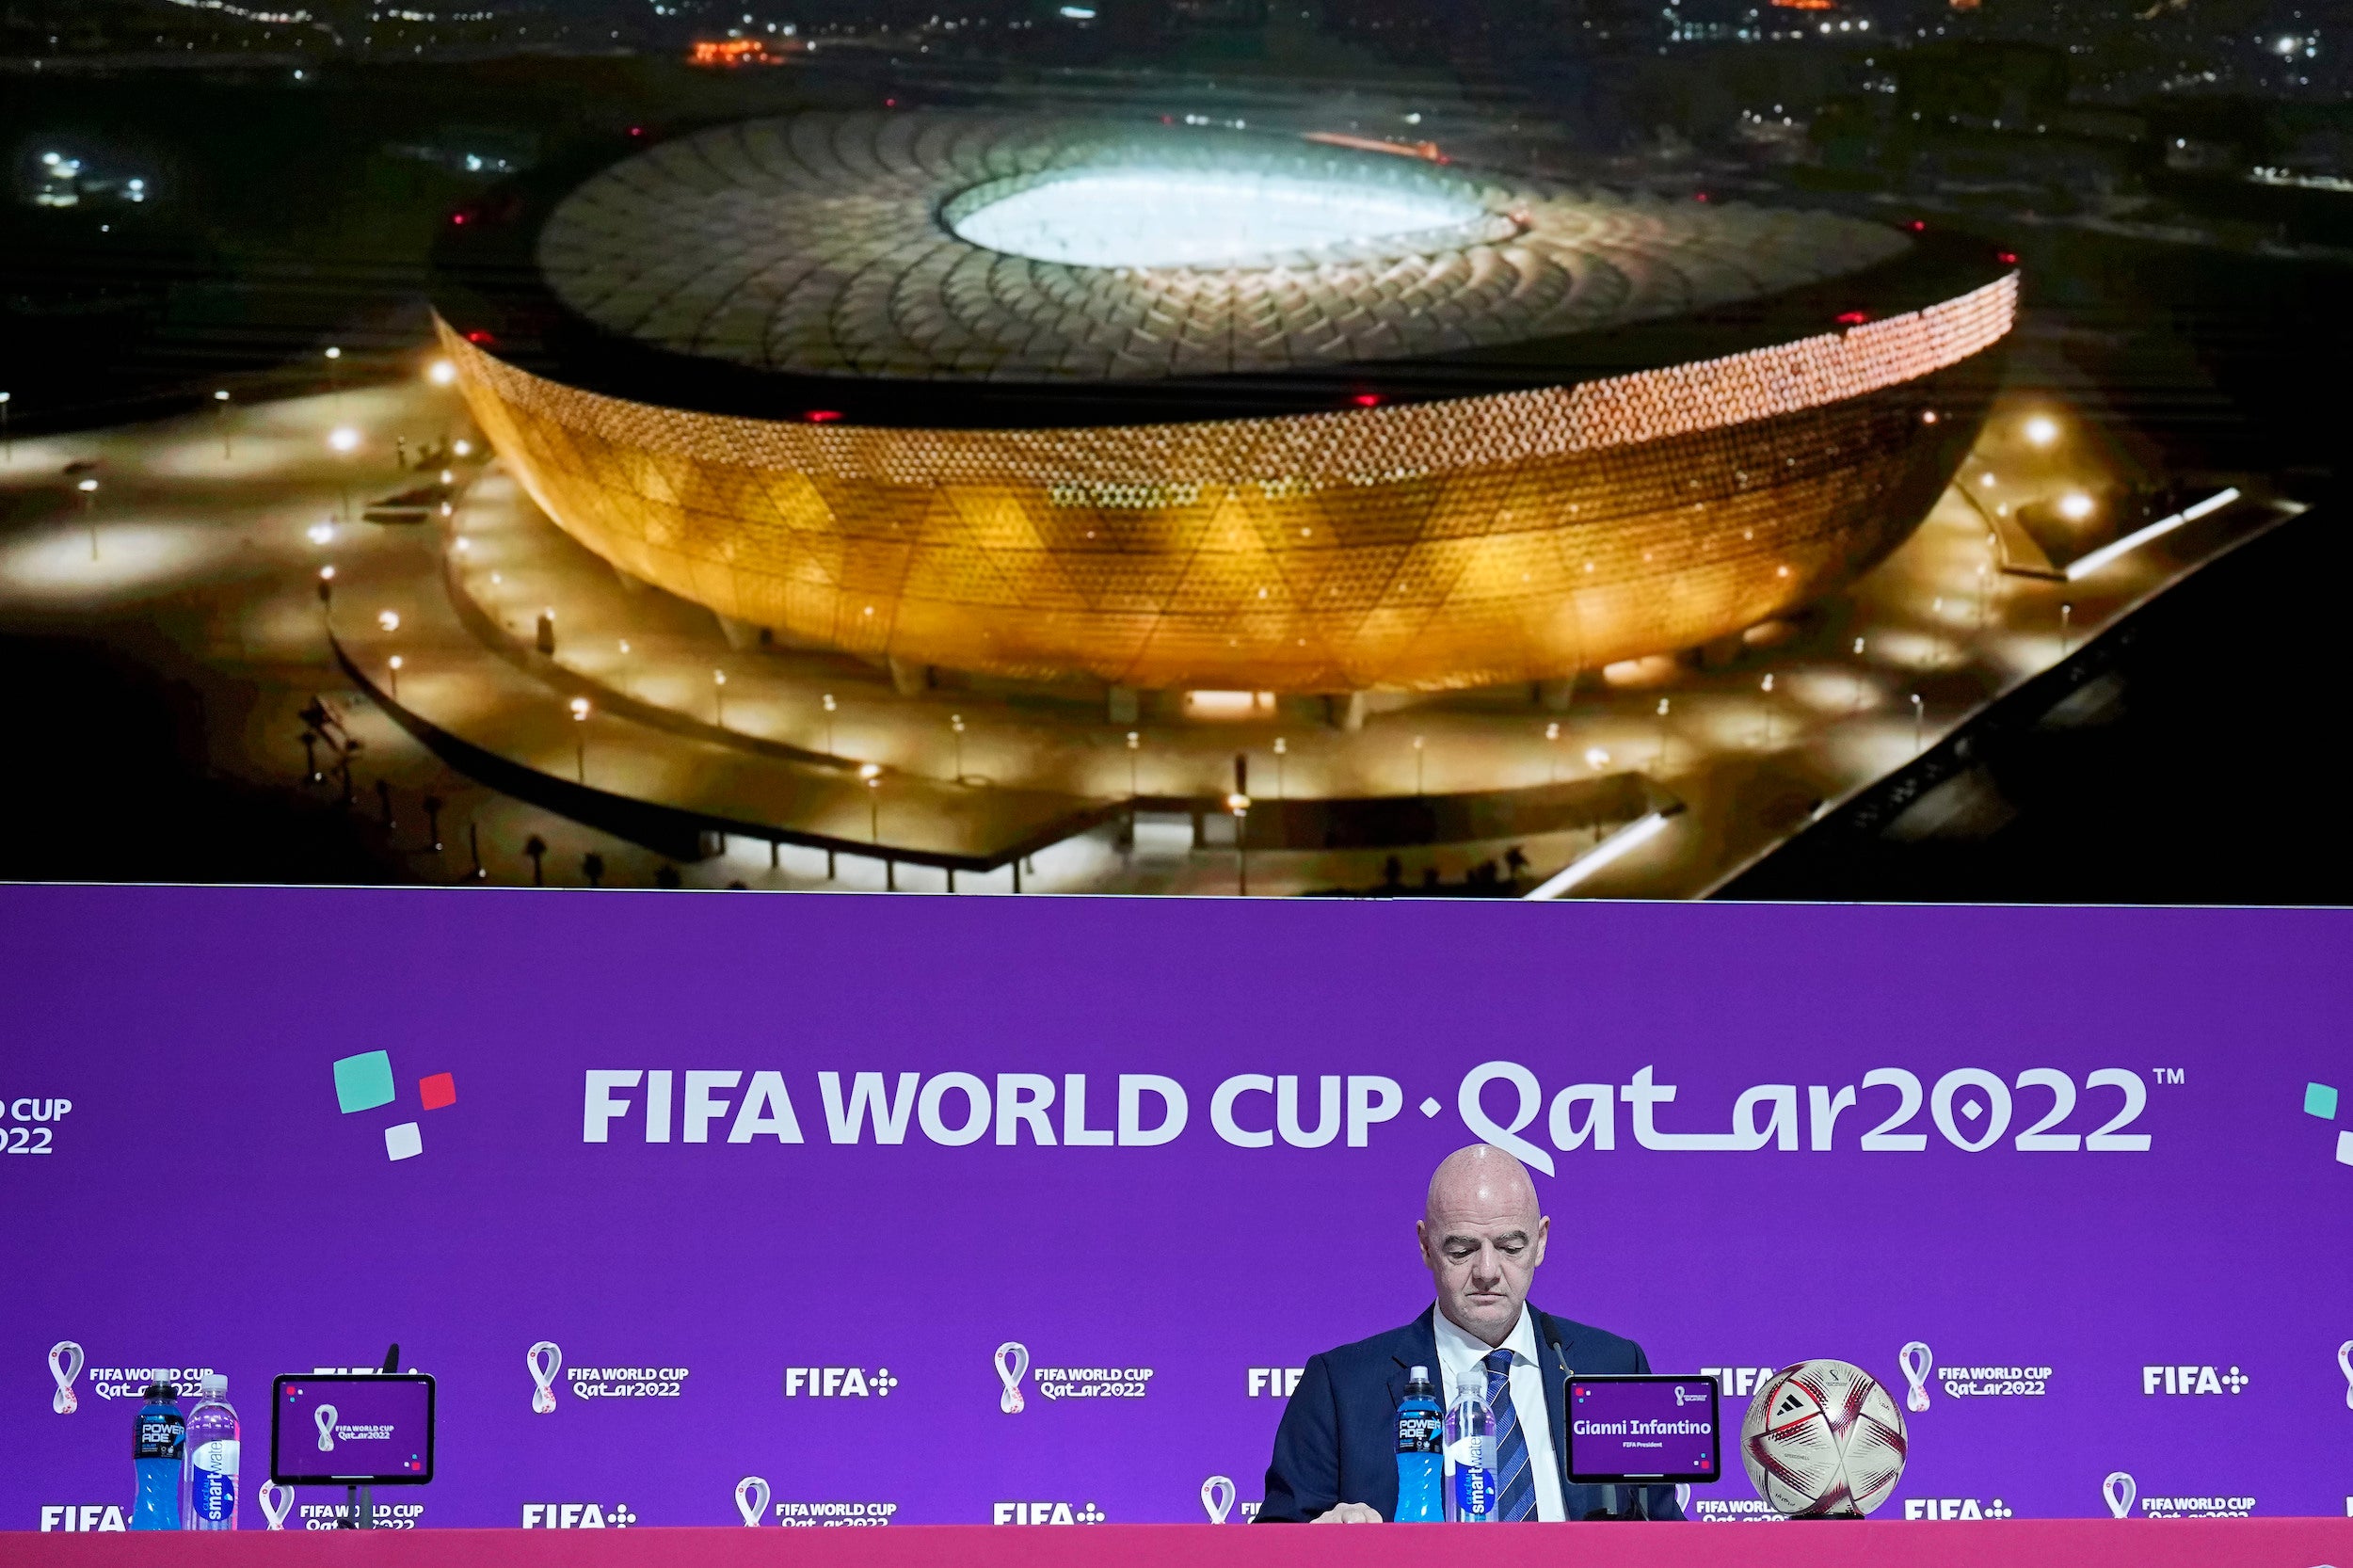 Le président de la FIFA, Gianni Infantino, assis devant une photo géante du Stade de Lusail, lors d’une conférence de presse tenue à Doha le 16 décembre 2022, deux jours avant la finale de la Coupe du monde de football au Qatar.